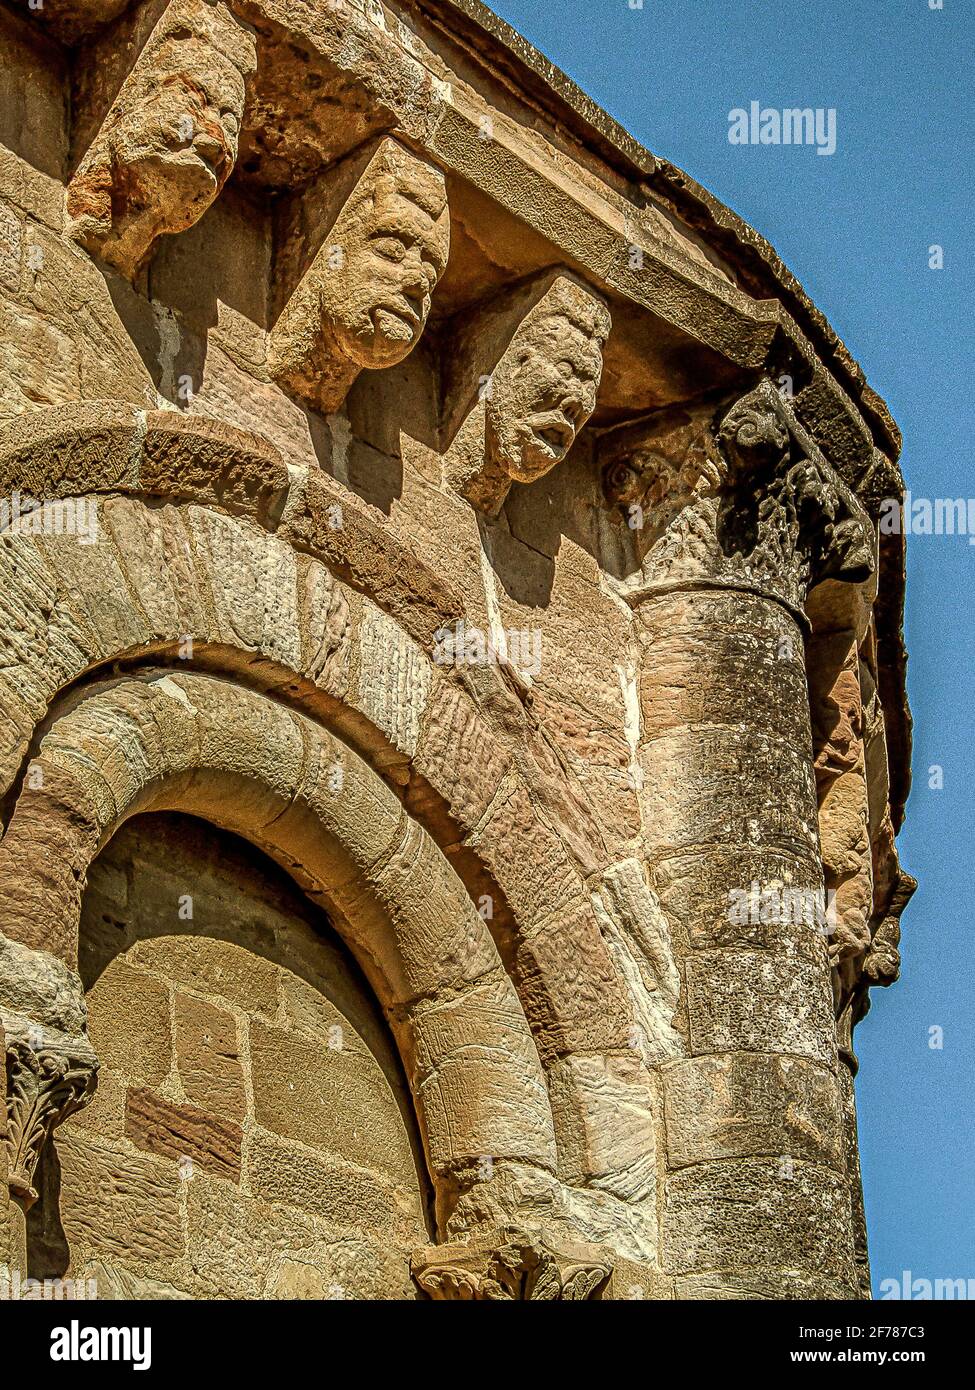 Dezember der romanischen Kirche der Heiligen Maria von Eunate aus dem 12. Jahrhundert, Spanien, 16. Oktober 2009 Stockfoto